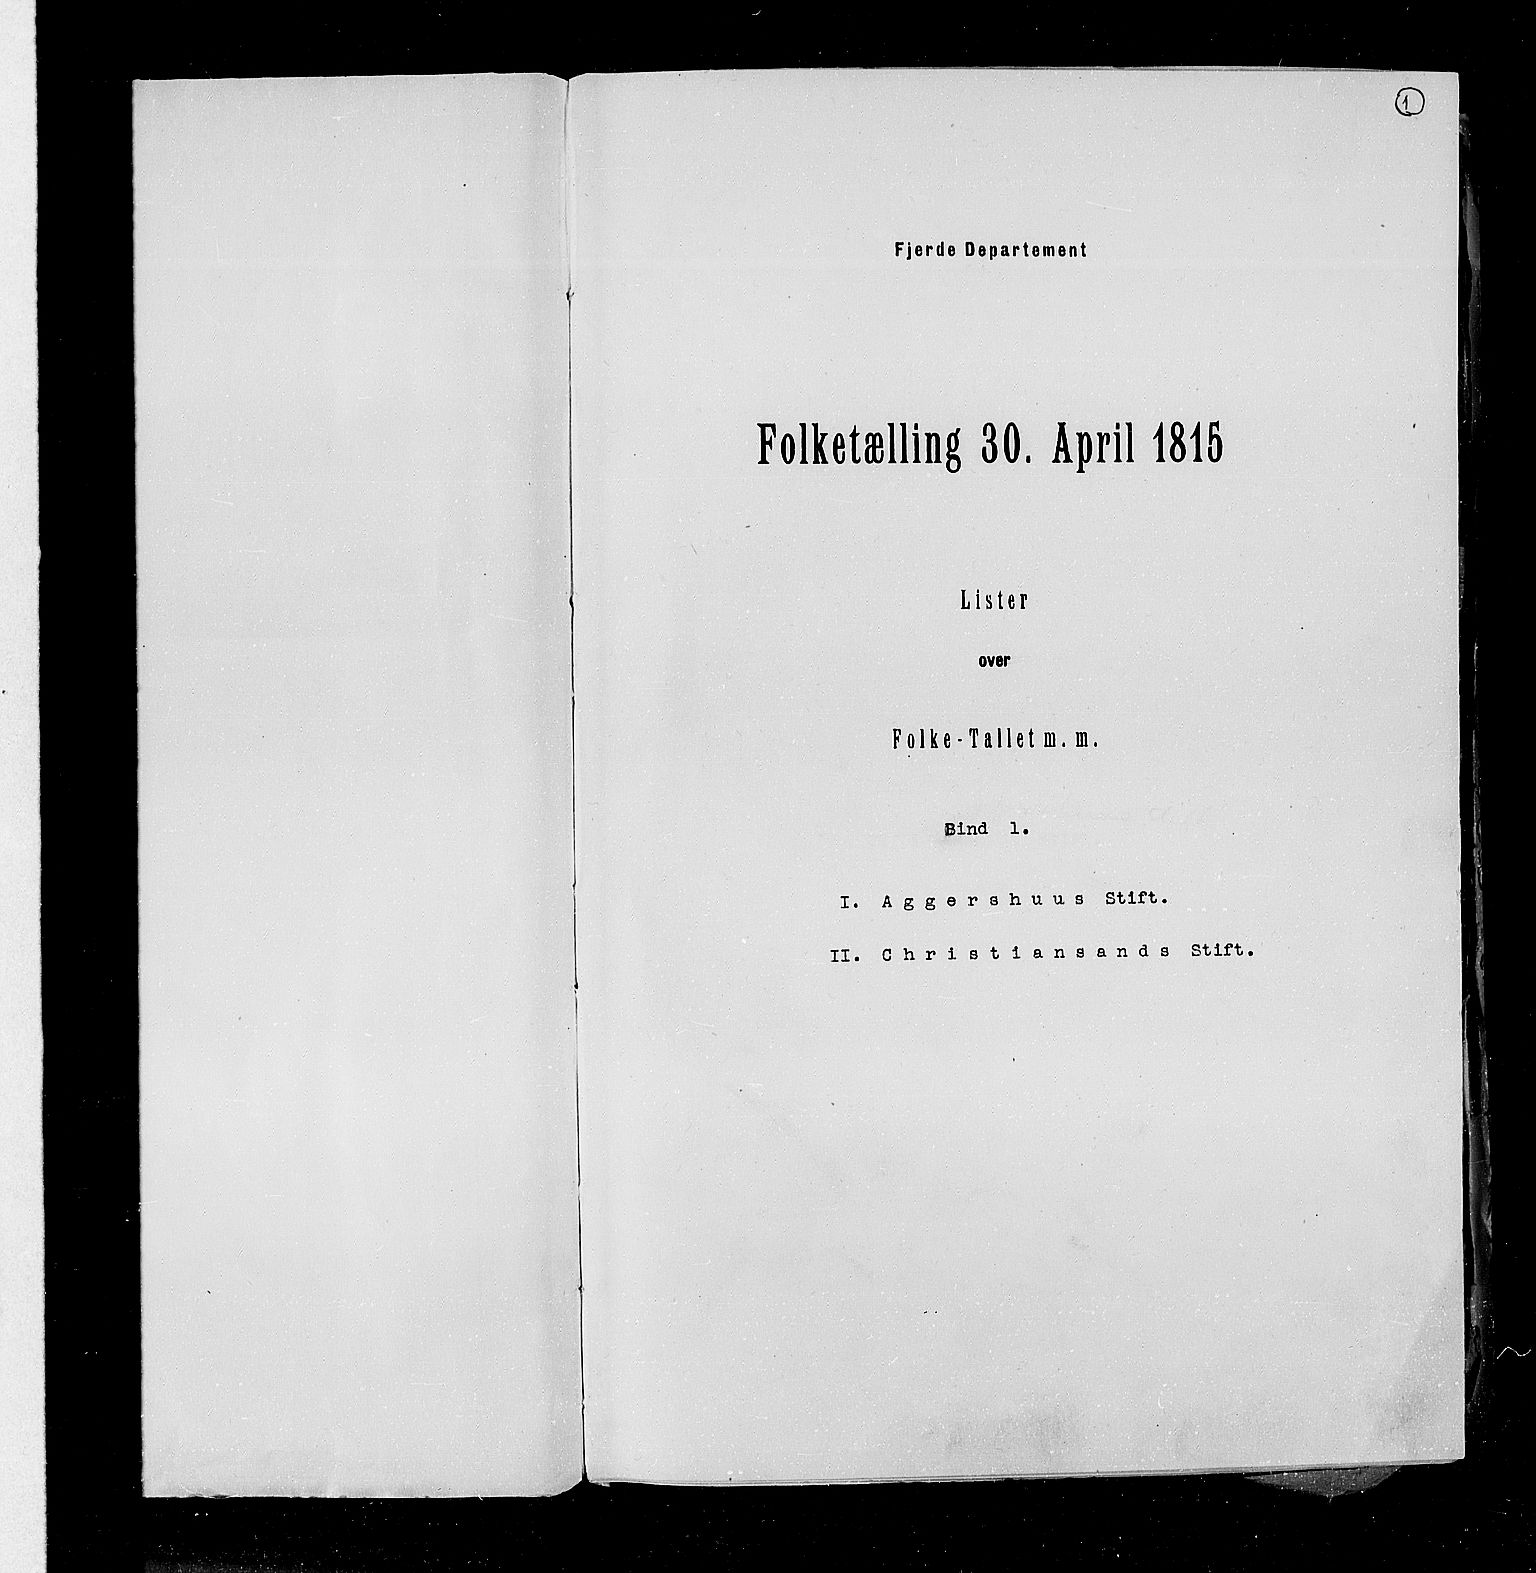 RA, Folketellingen 1815, bind 1: Akershus stift og Kristiansand stift, 1815, s. 2